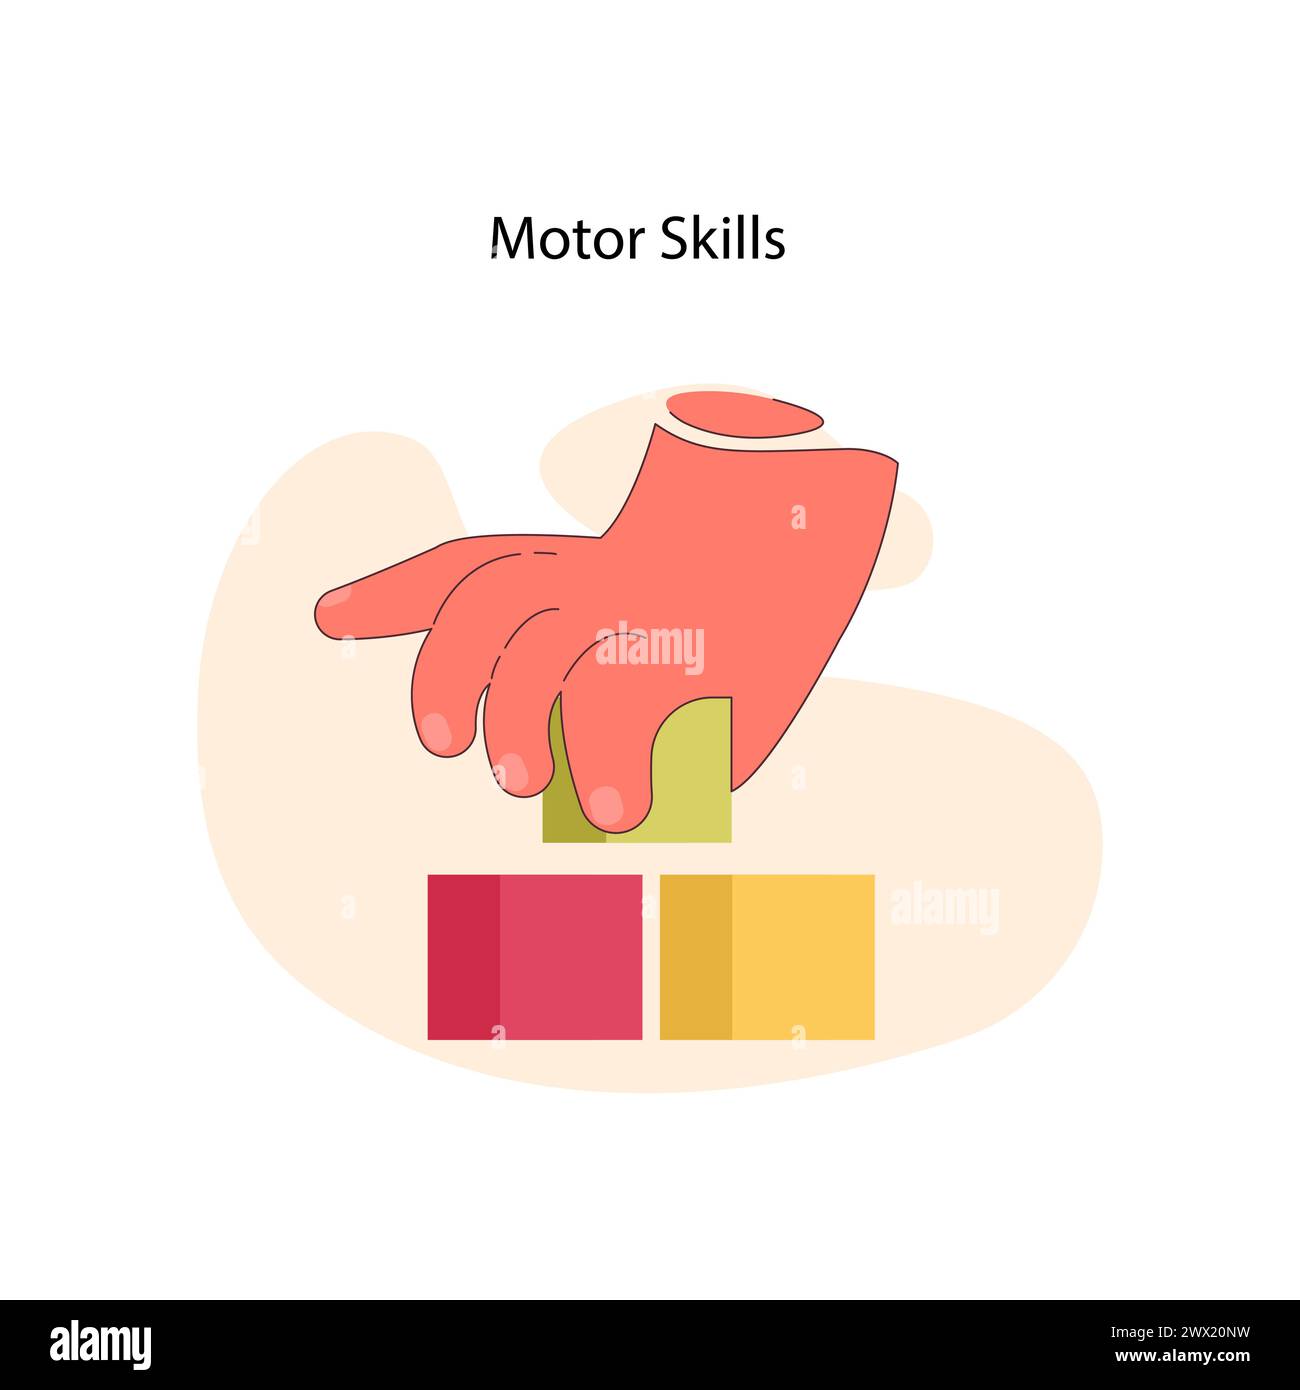 Concepto de habilidades motoras. Una ilustración gráfica de una coordinación de ajuste de la mano mediante el apilamiento de bloques, que simboliza el desarrollo de un control de movimiento preciso. Ilustración vectorial plana Ilustración del Vector